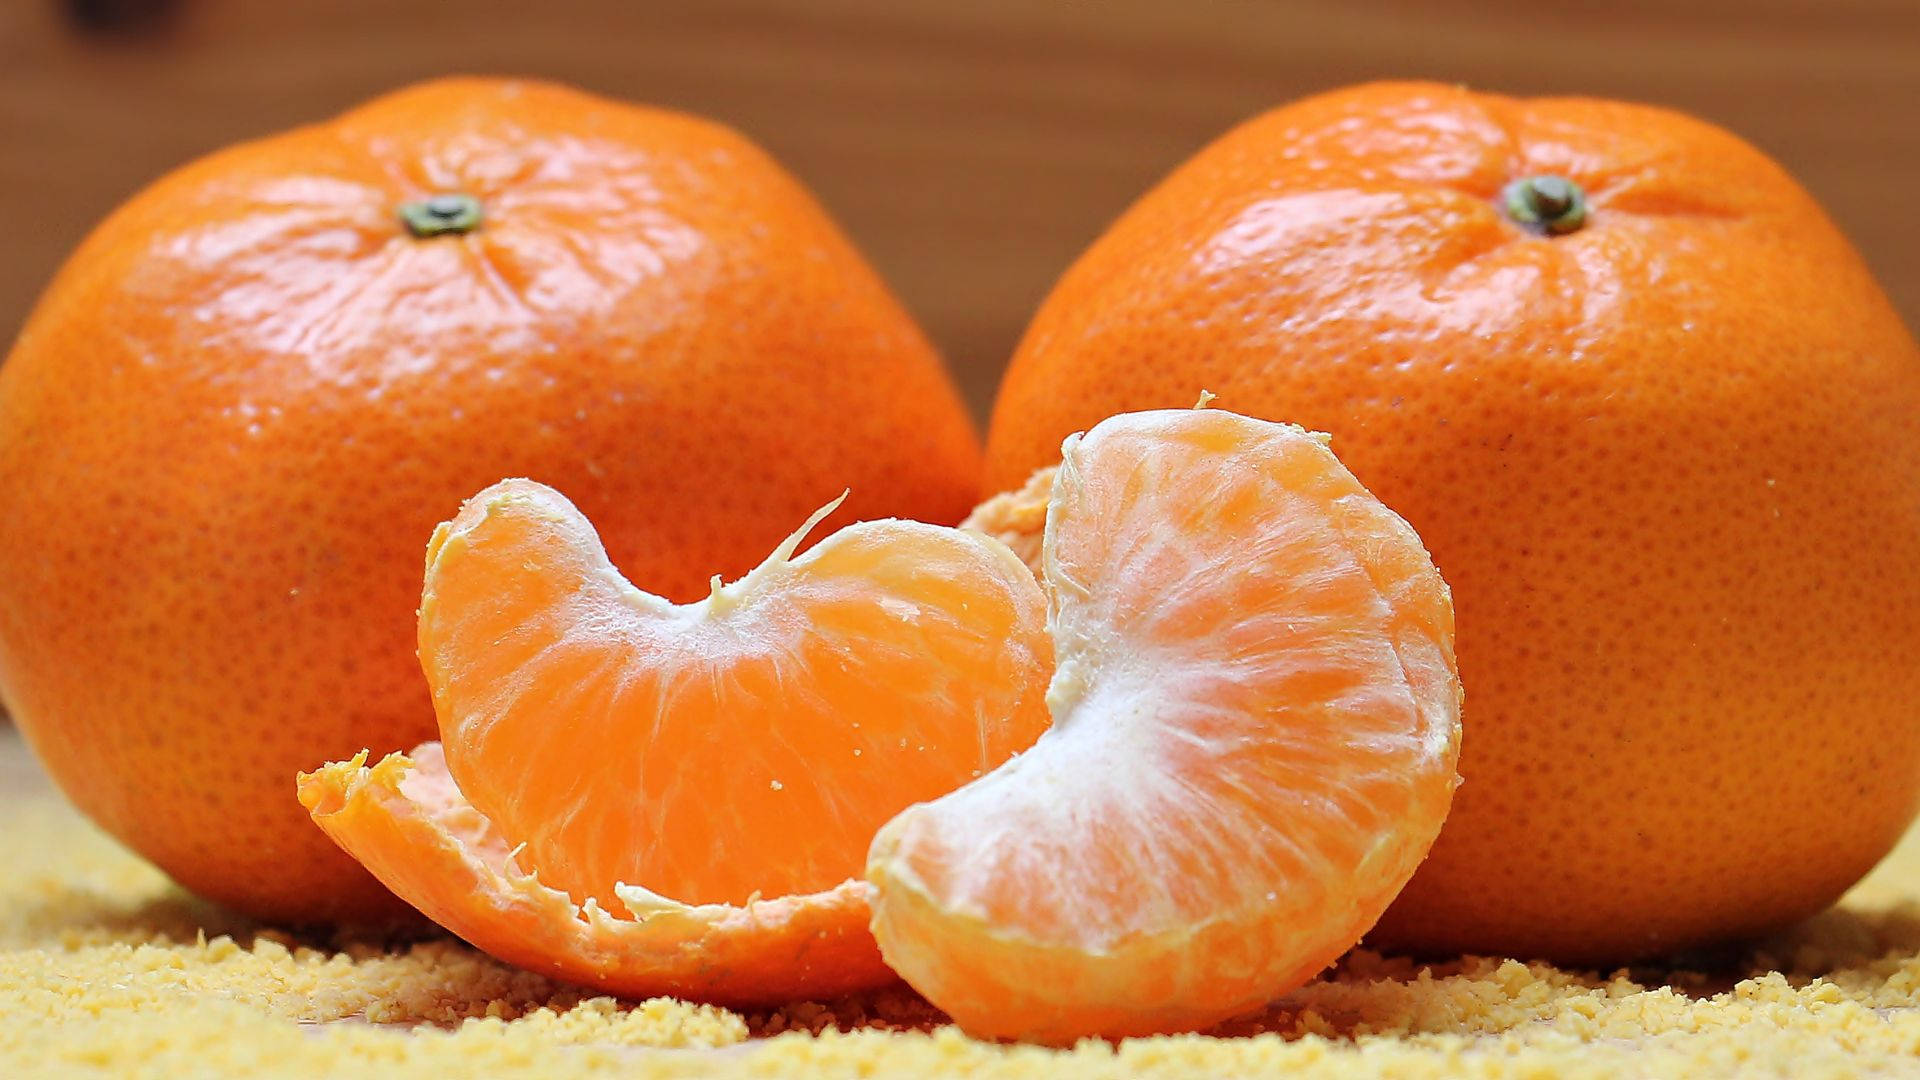 Peeled Orange Fruits Background